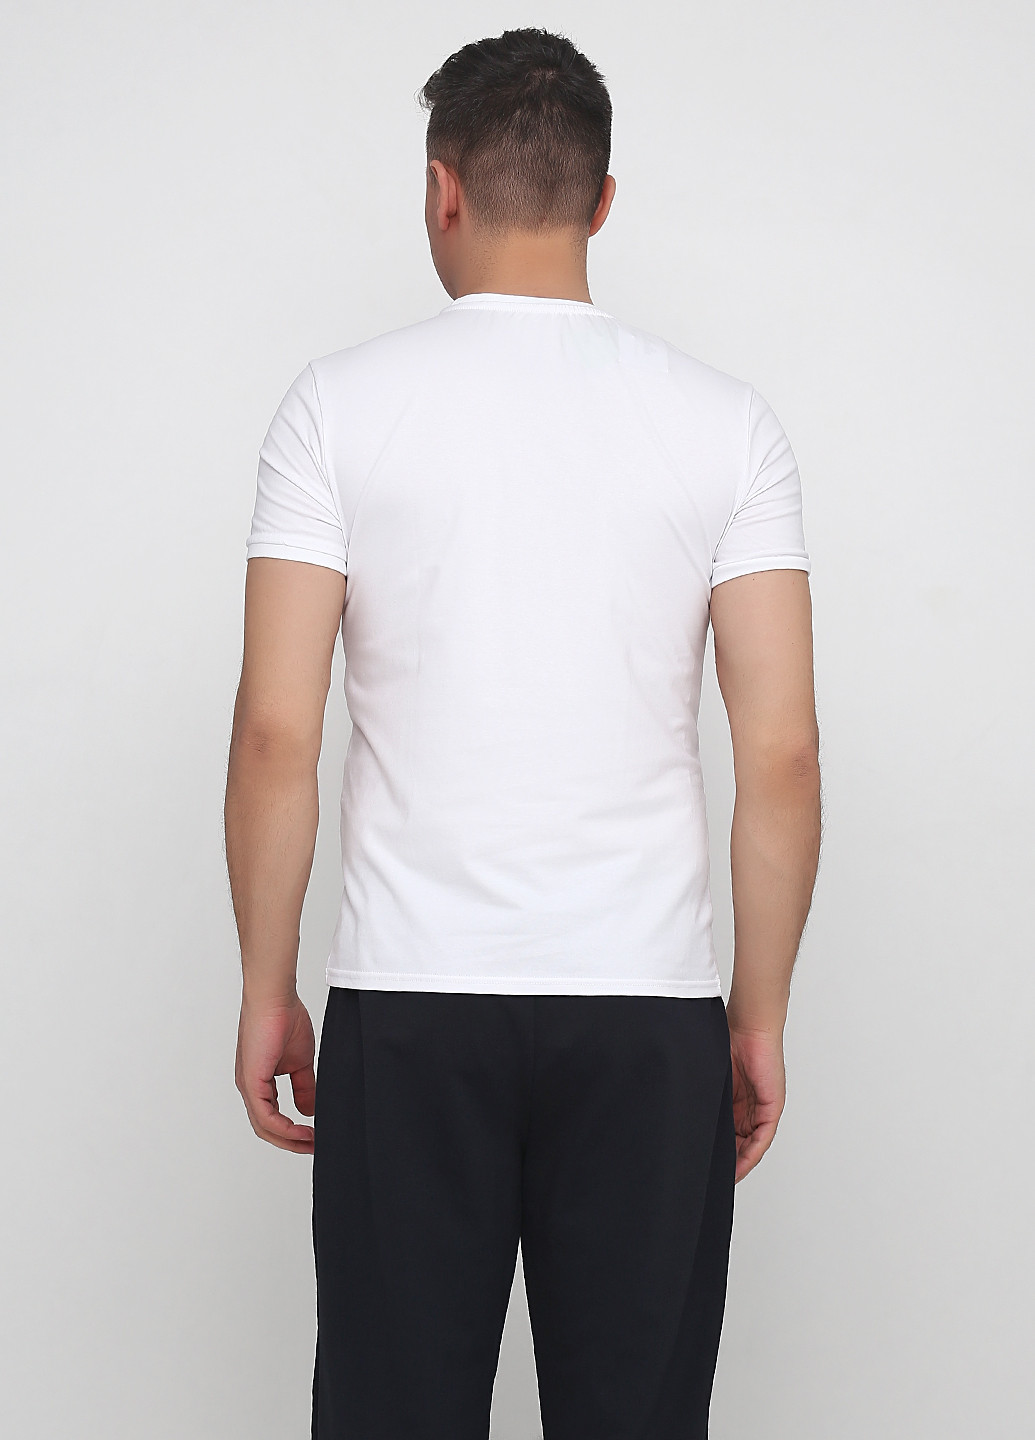 Біла футболка чоловіча 19м440-24 біла Malta